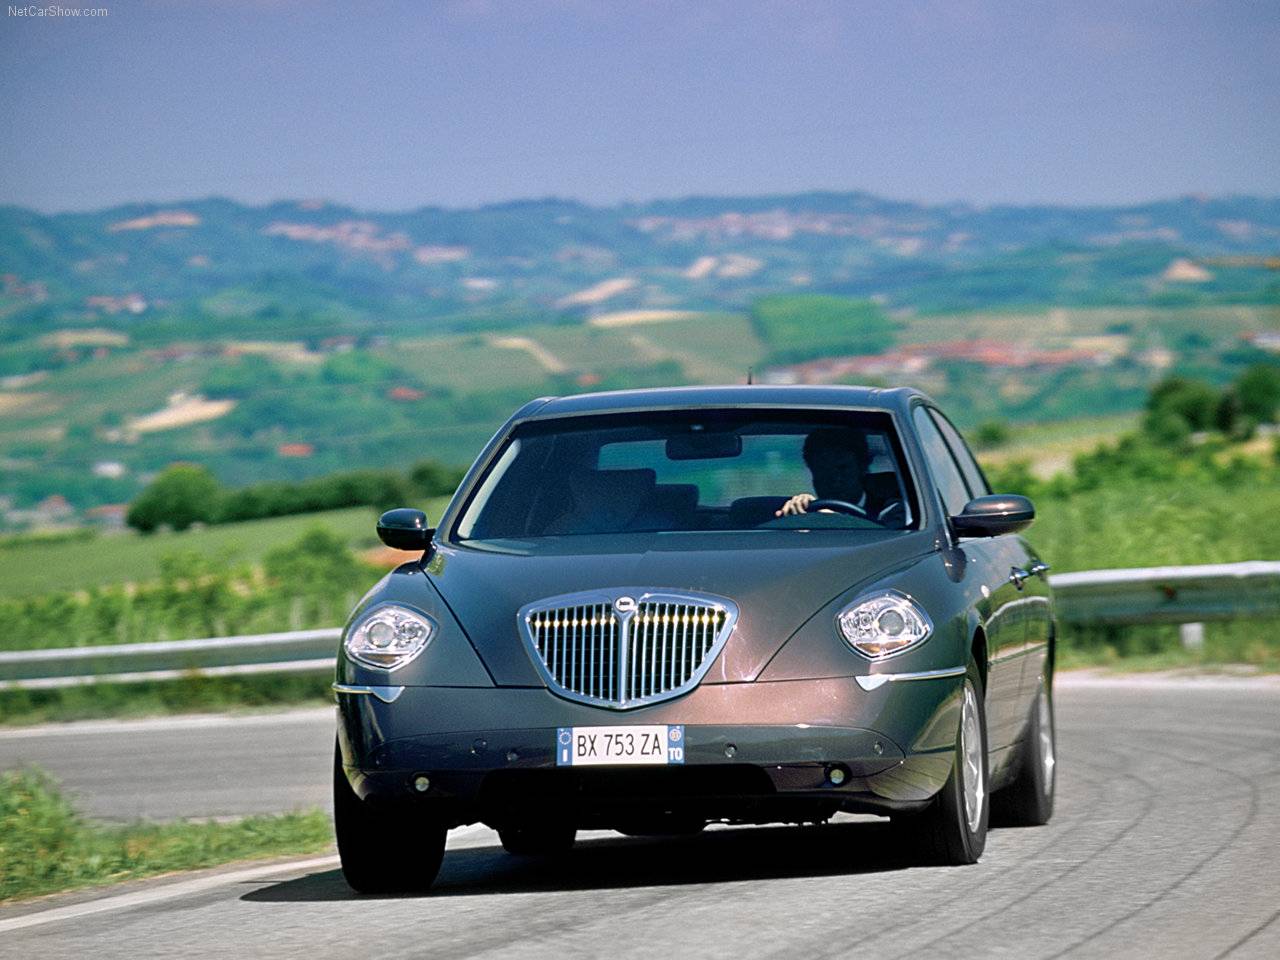 Lancia - Auto twenty-first century: 2003 Lancia Thesis 2.4 20v JTD